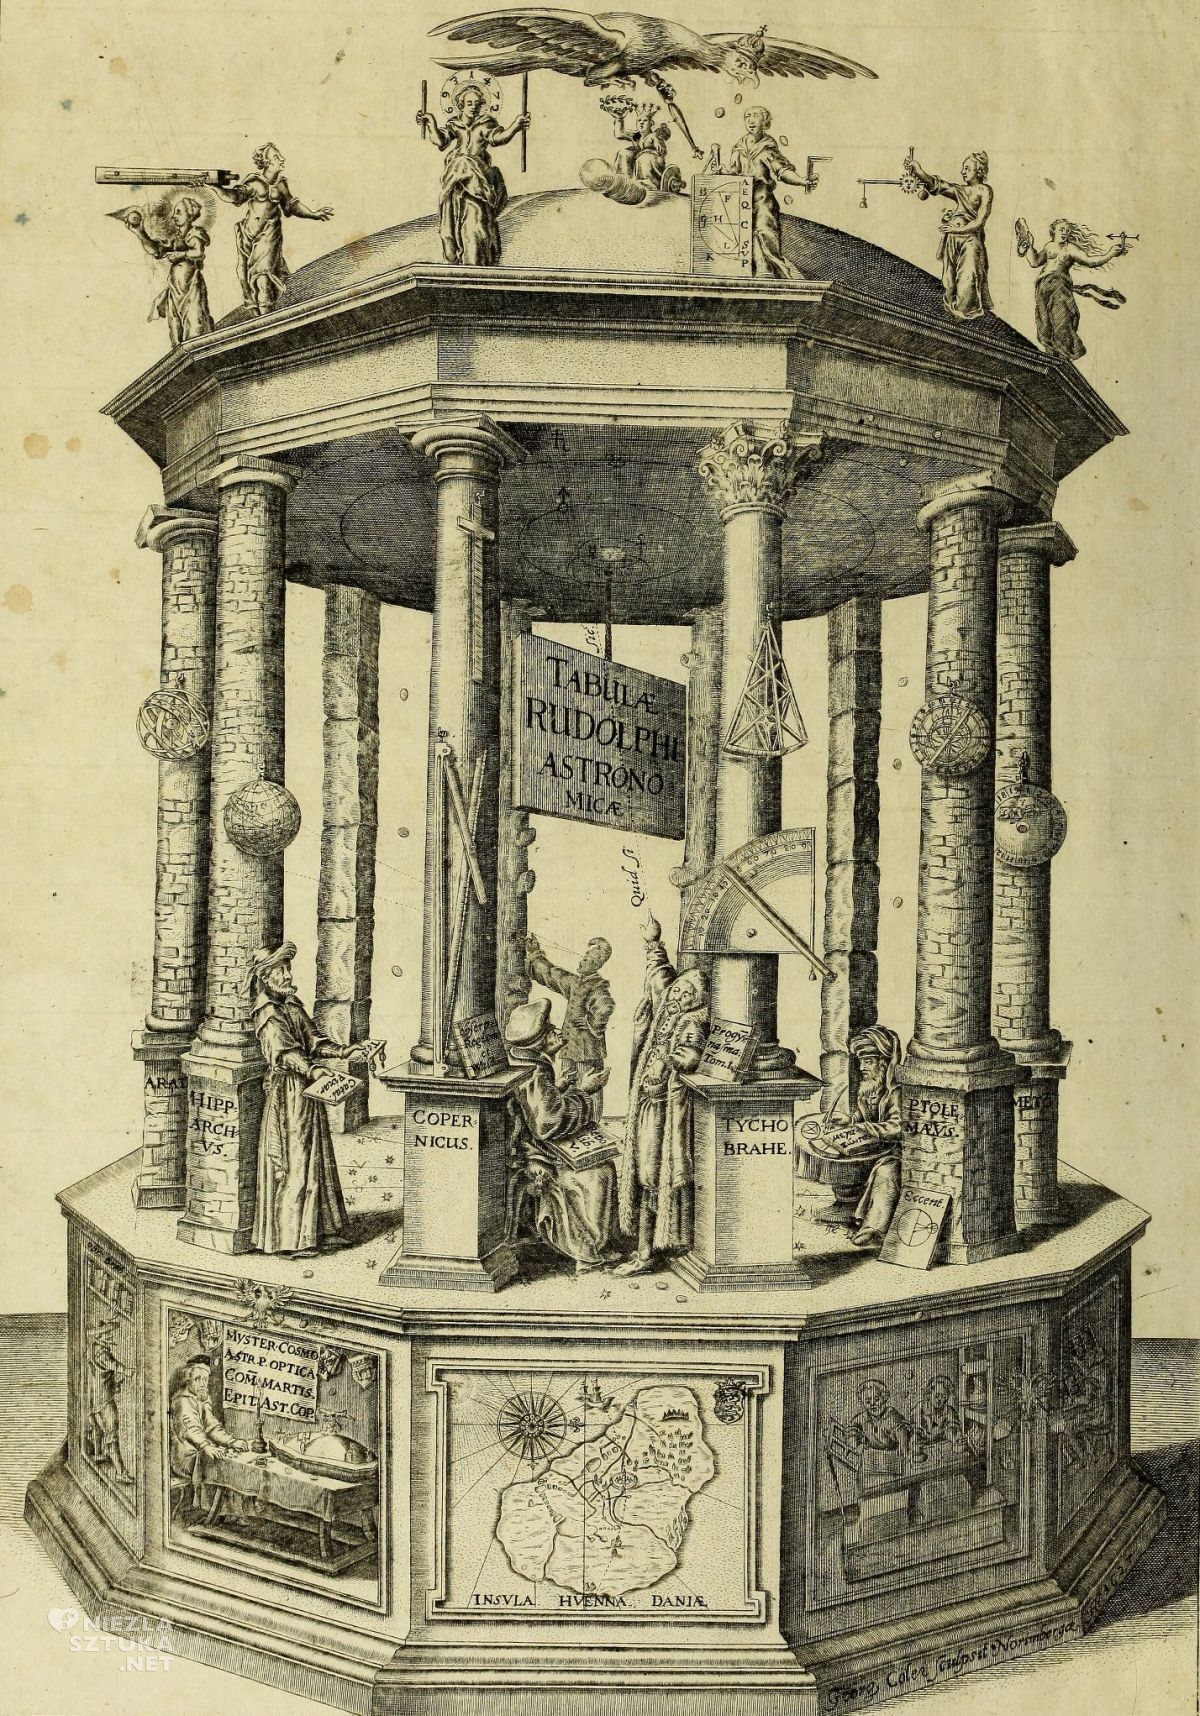 Mikołaj Kopernik, Tablice Rudolfińskie, astronom, Johannes Kepler, Ptolemeusz, niezła sztuka